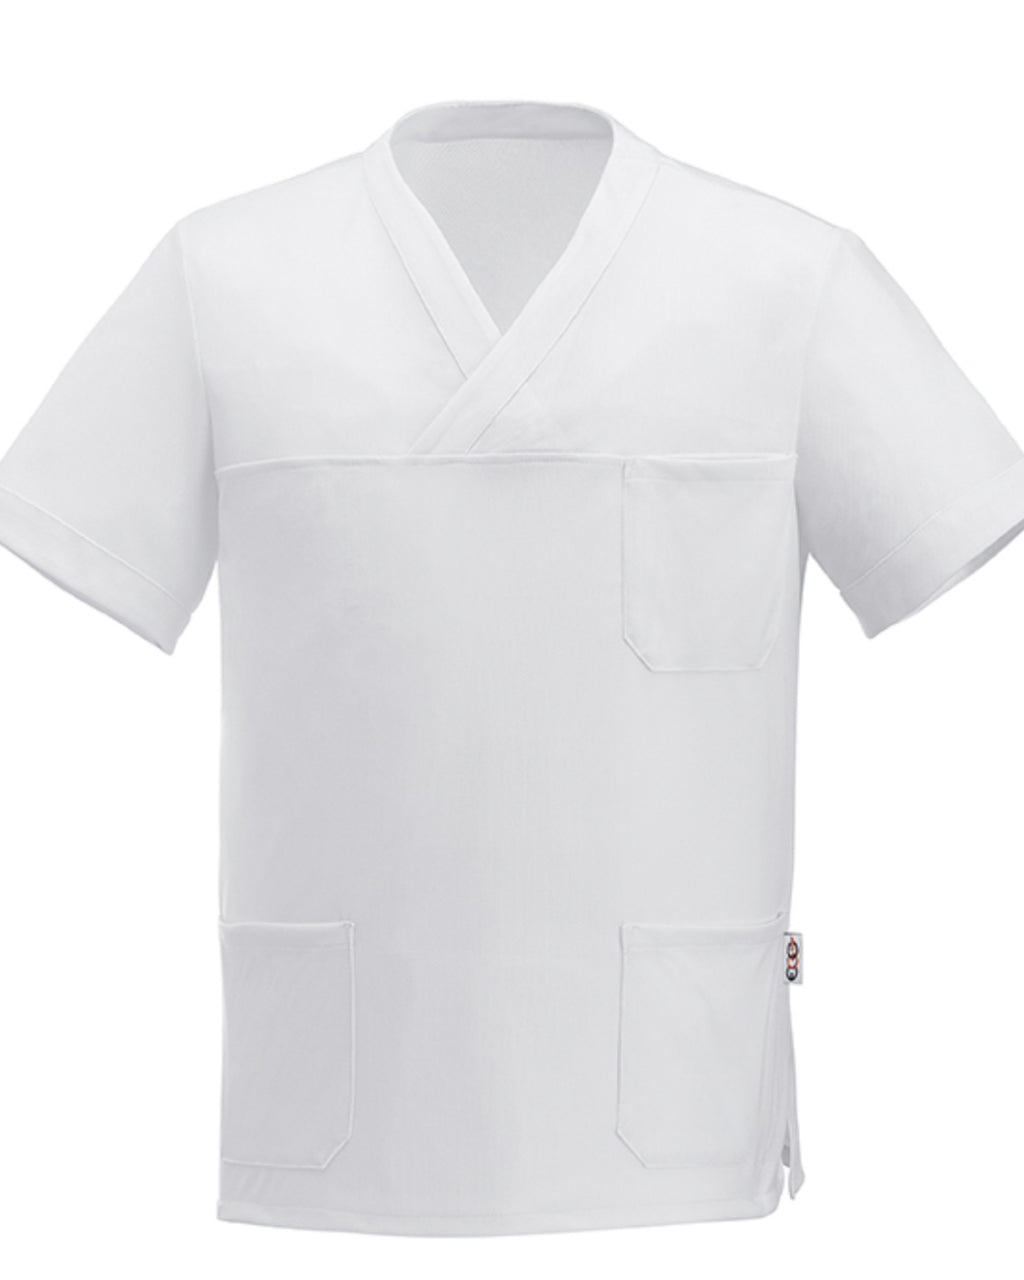 White Medical Tunic Short Sleeve